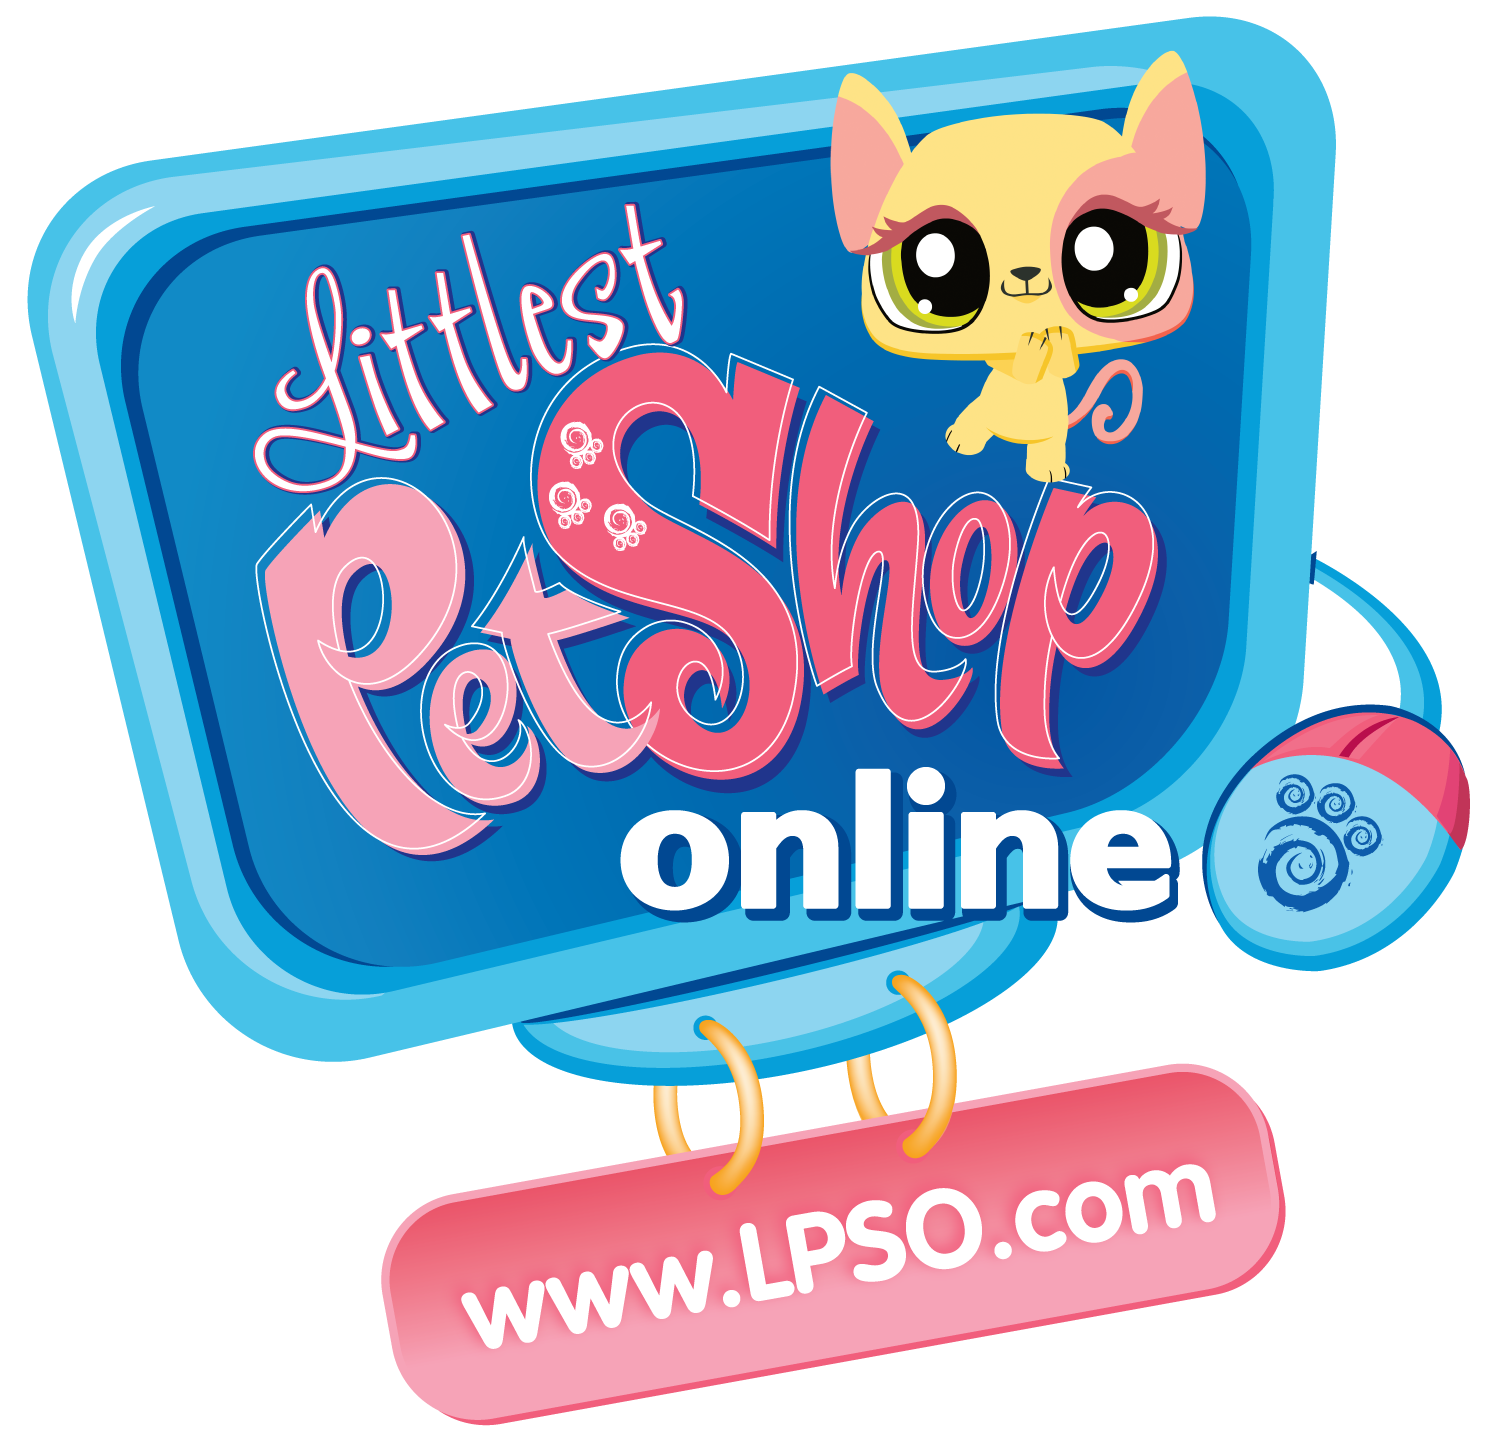 littlest pet shop online closed